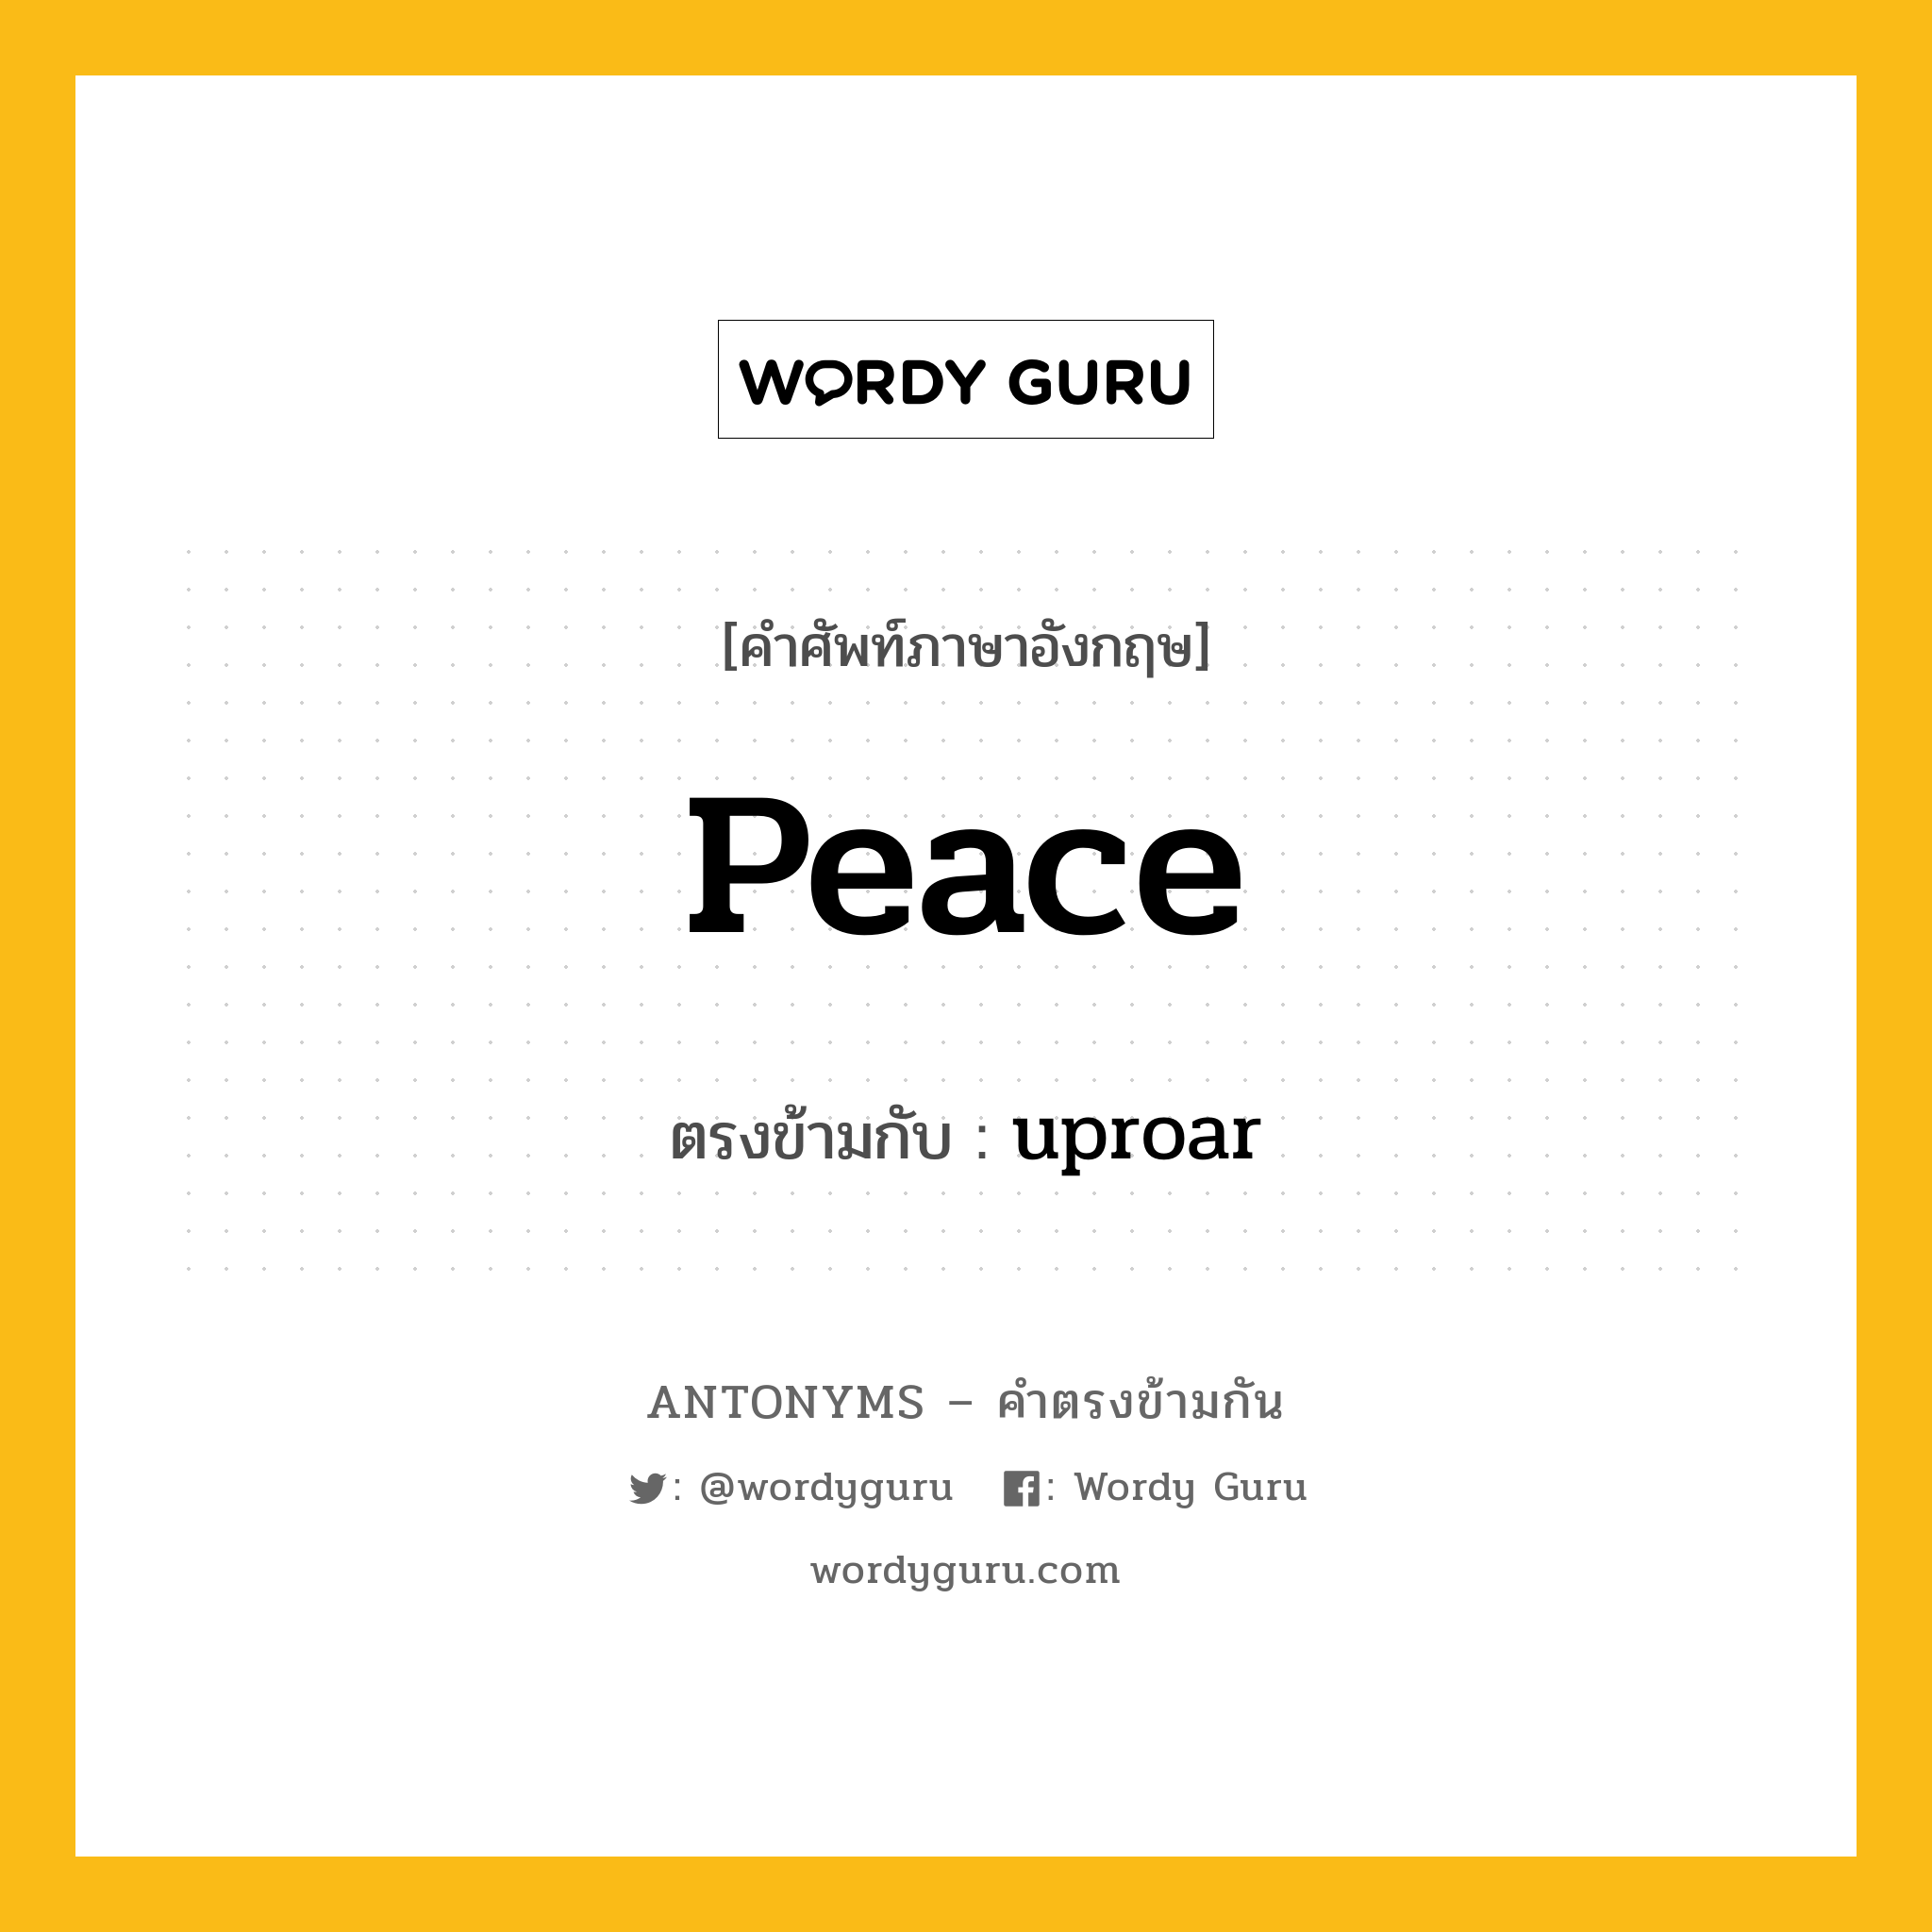 peace เป็นคำตรงข้ามกับคำไหนบ้าง?, คำศัพท์ภาษาอังกฤษ peace ตรงข้ามกับ uproar หมวด uproar